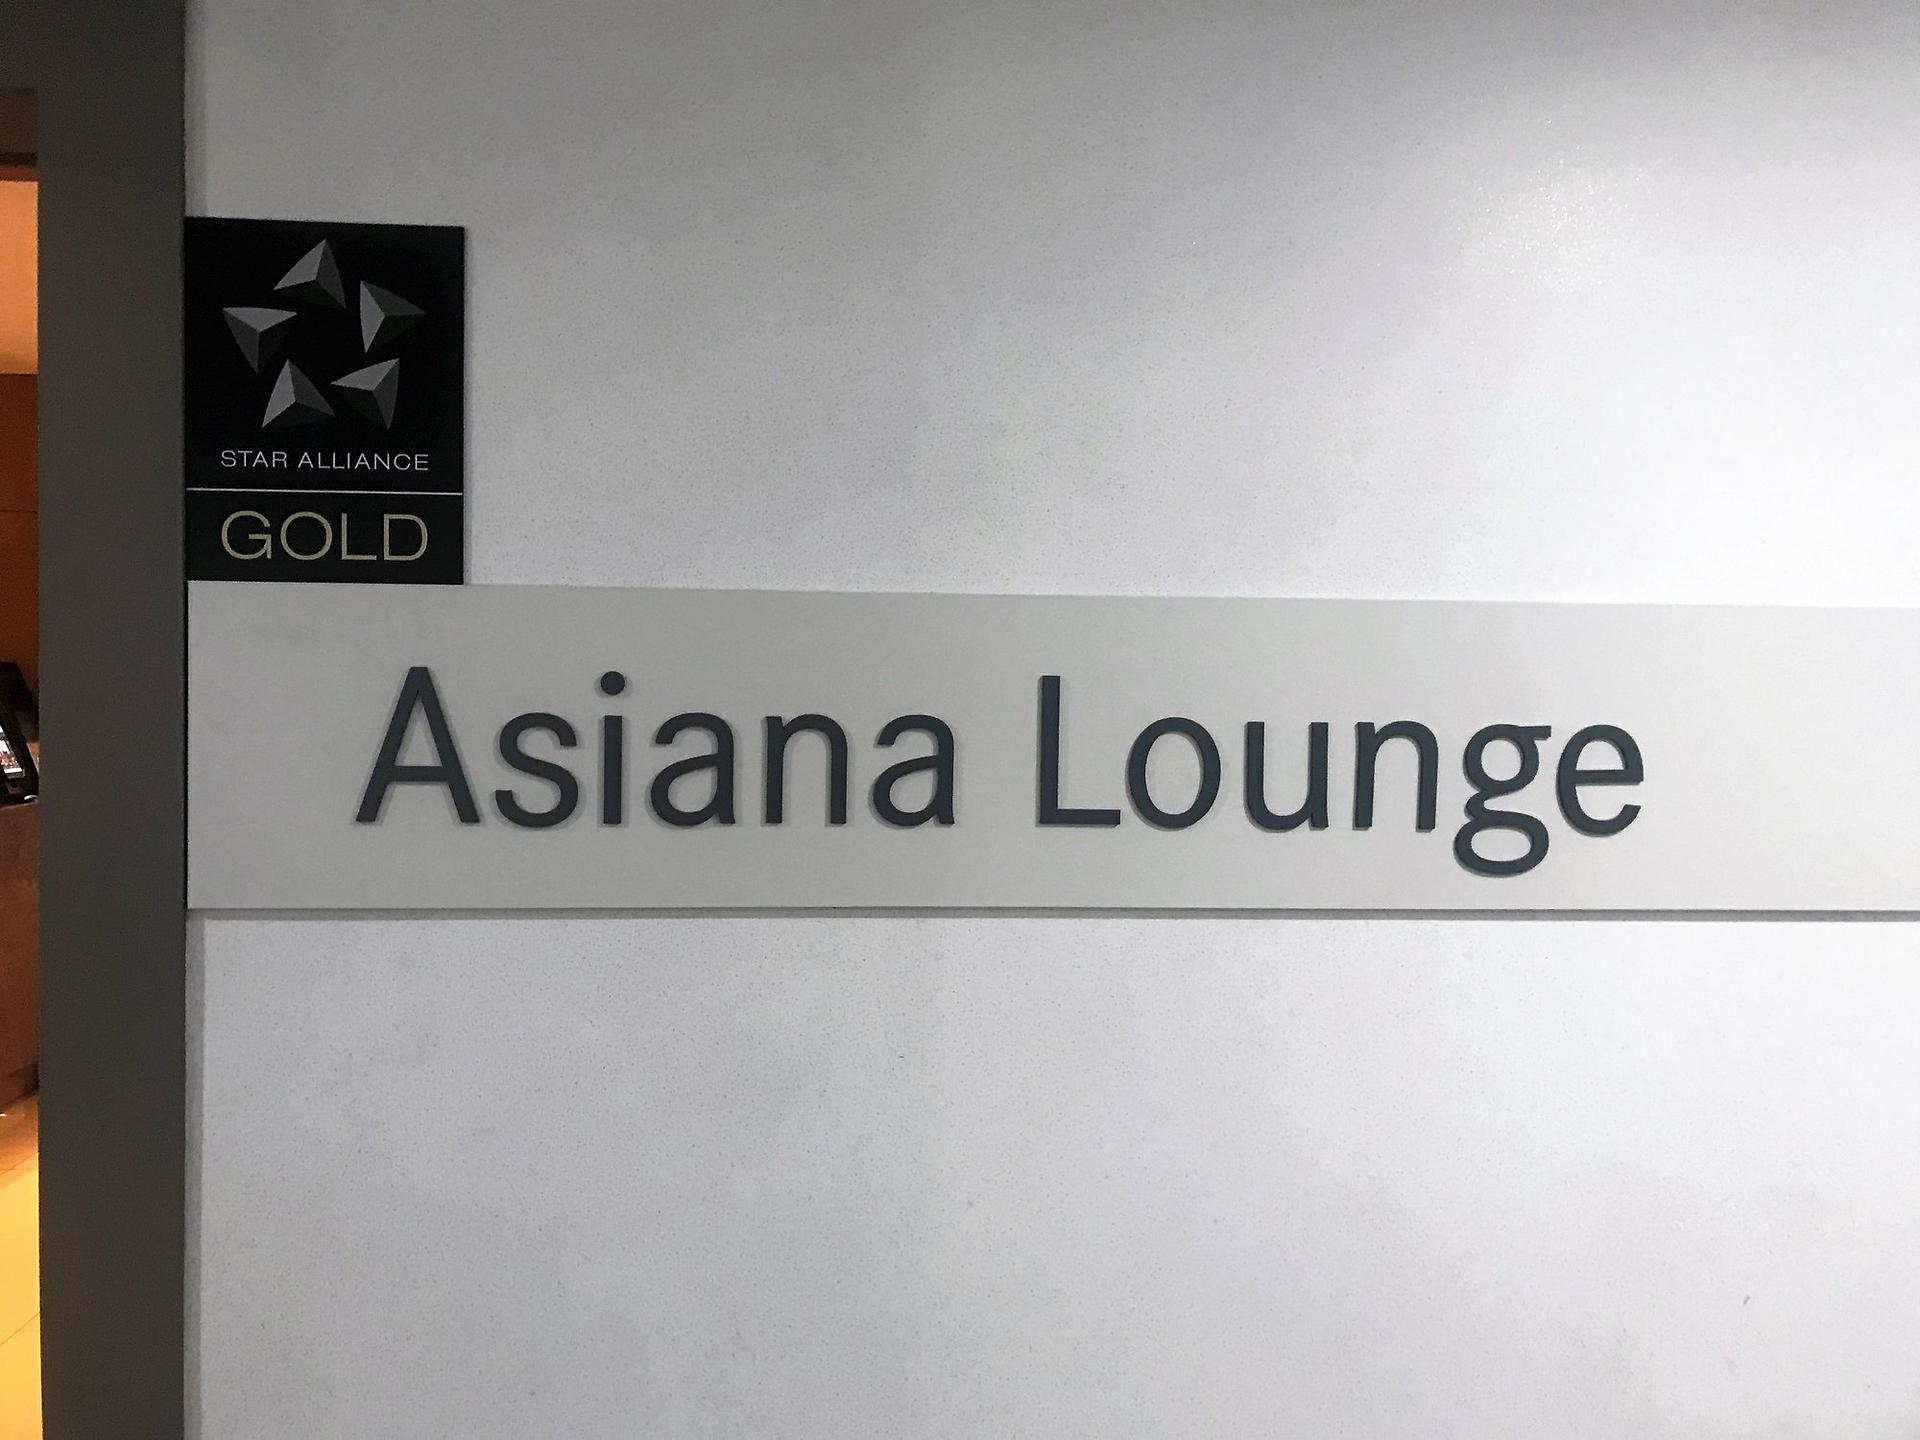 Asiana Lounge image 25 of 26